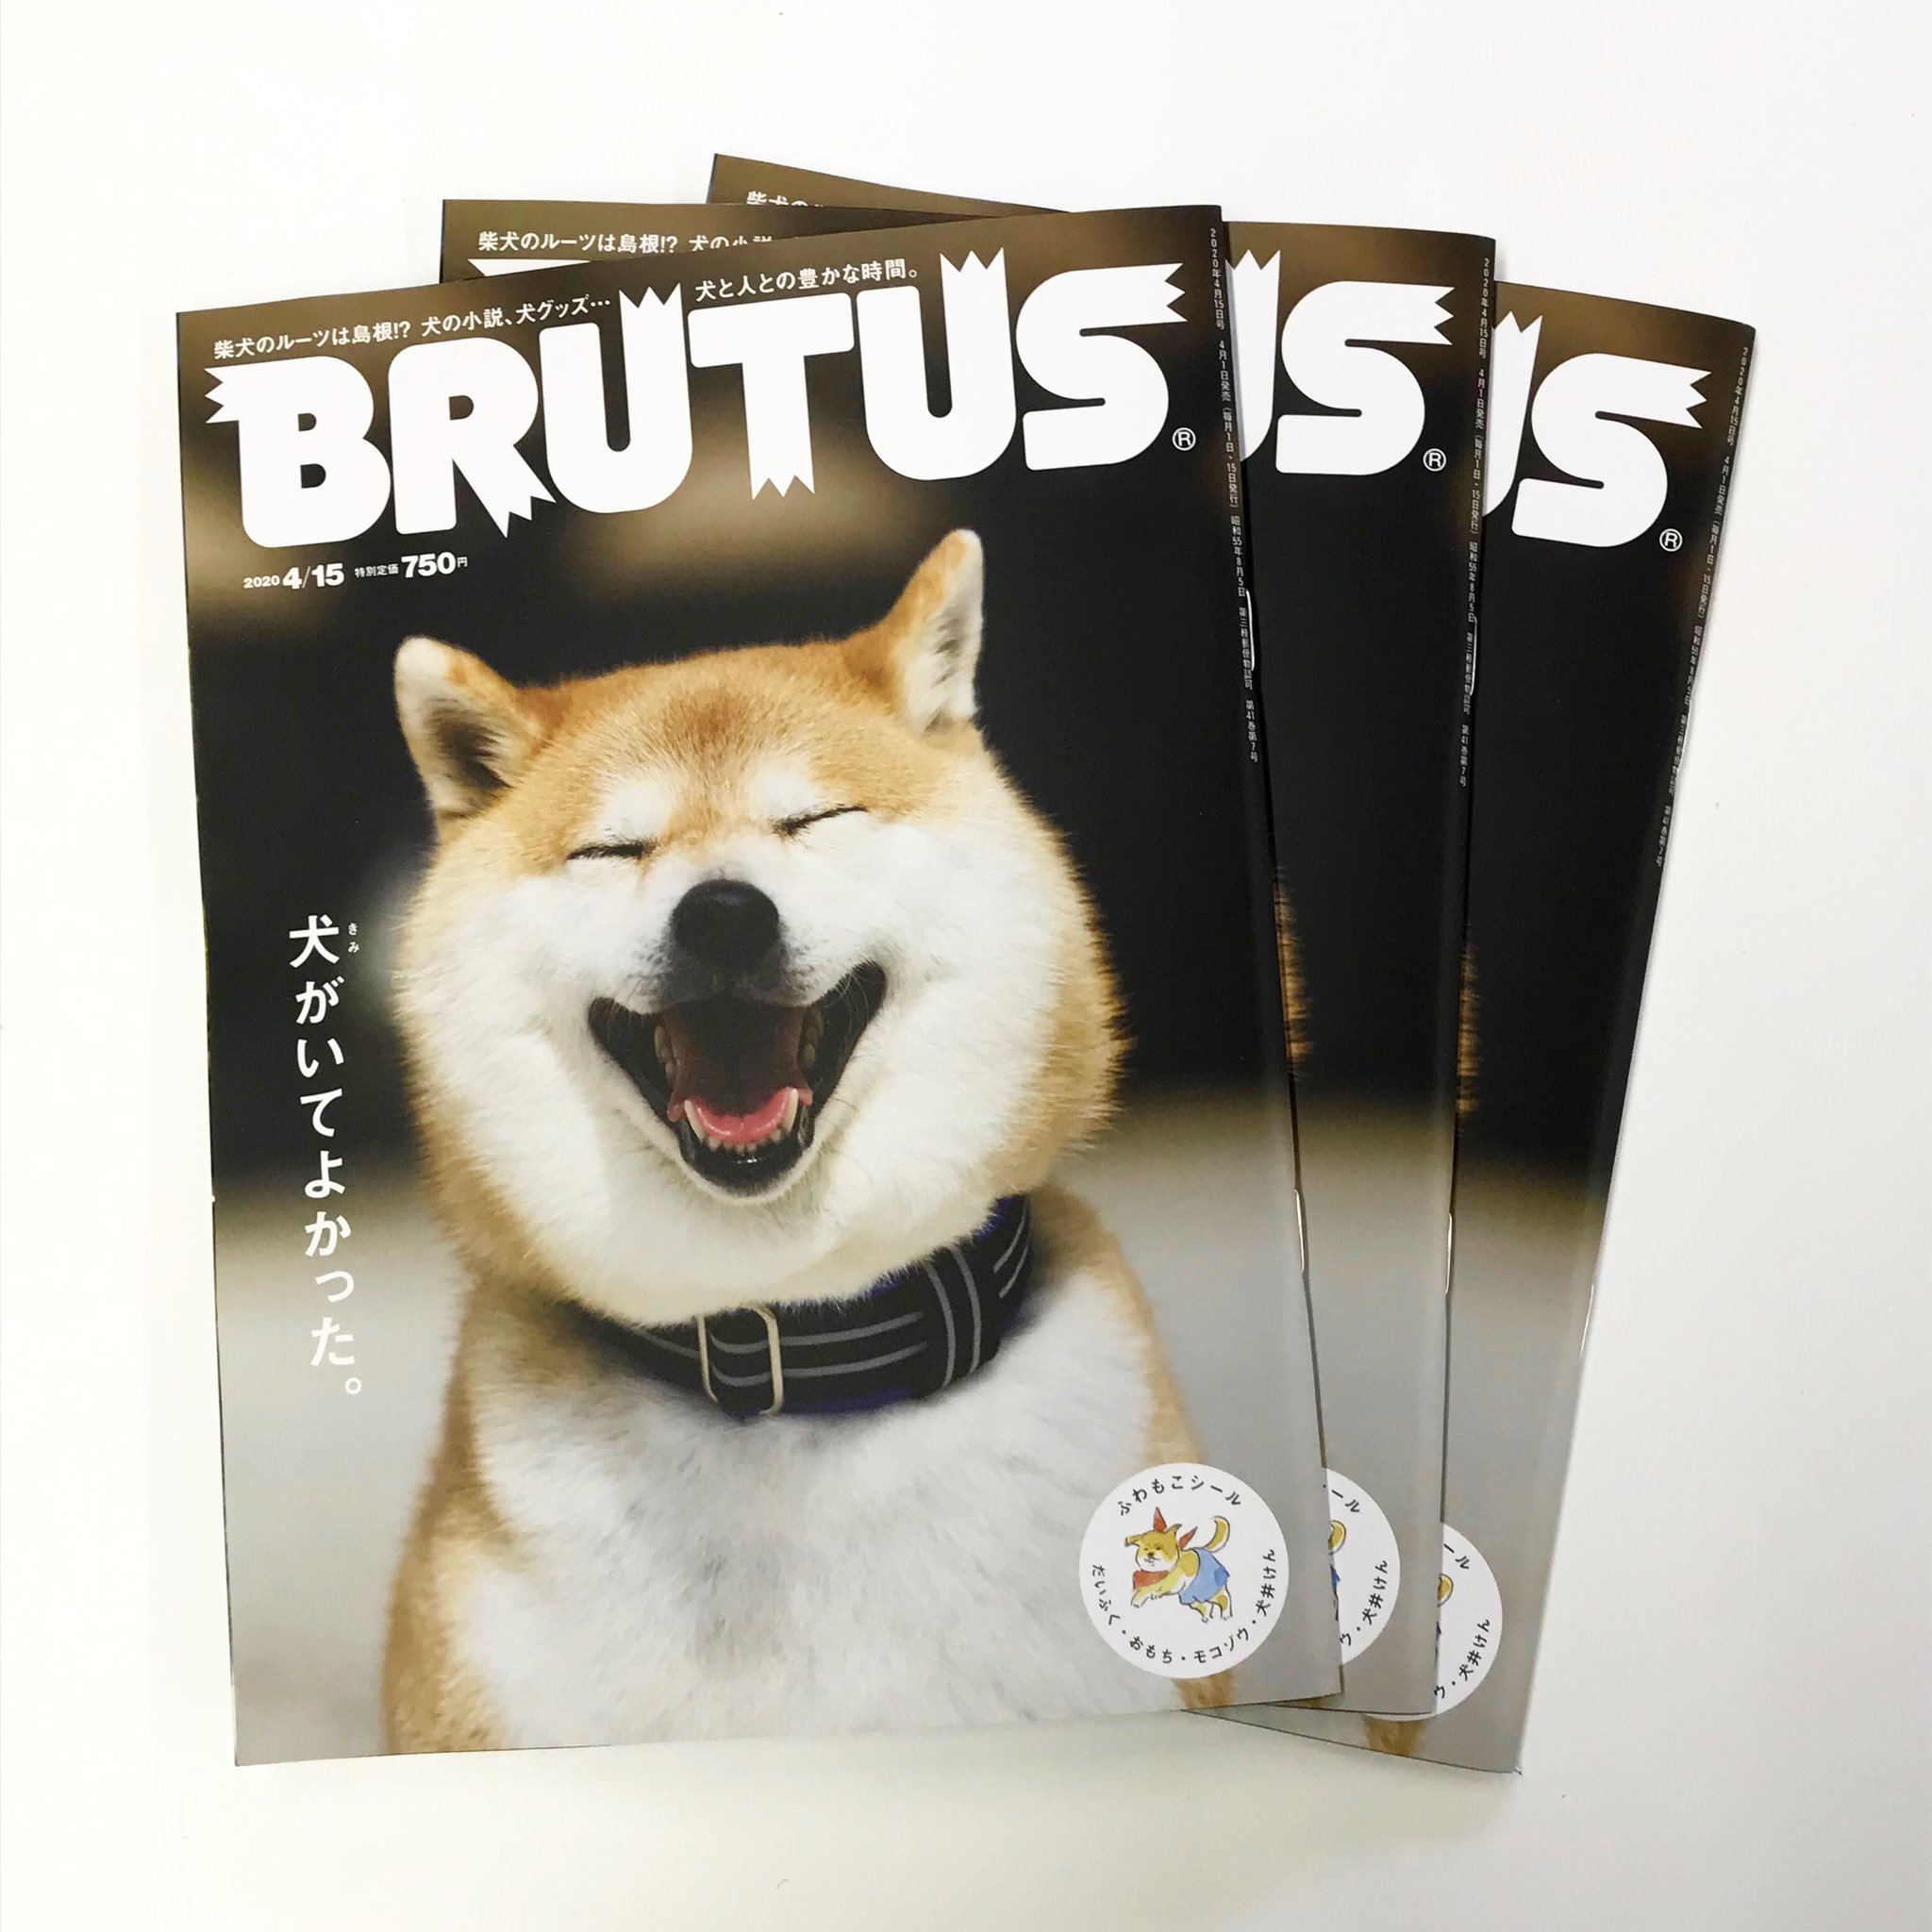 تويتر Brutus على تويتر 犬 特集 4月1日発売 編集部に早刷りが届きました 次号は 犬 きみ がいてよかった ビートたけしさん 氷川きよしさん 愛犬を語るとき 誰もが優しい顔になりました Brutus 犬がいてよかった 犬のいる暮らし T Co